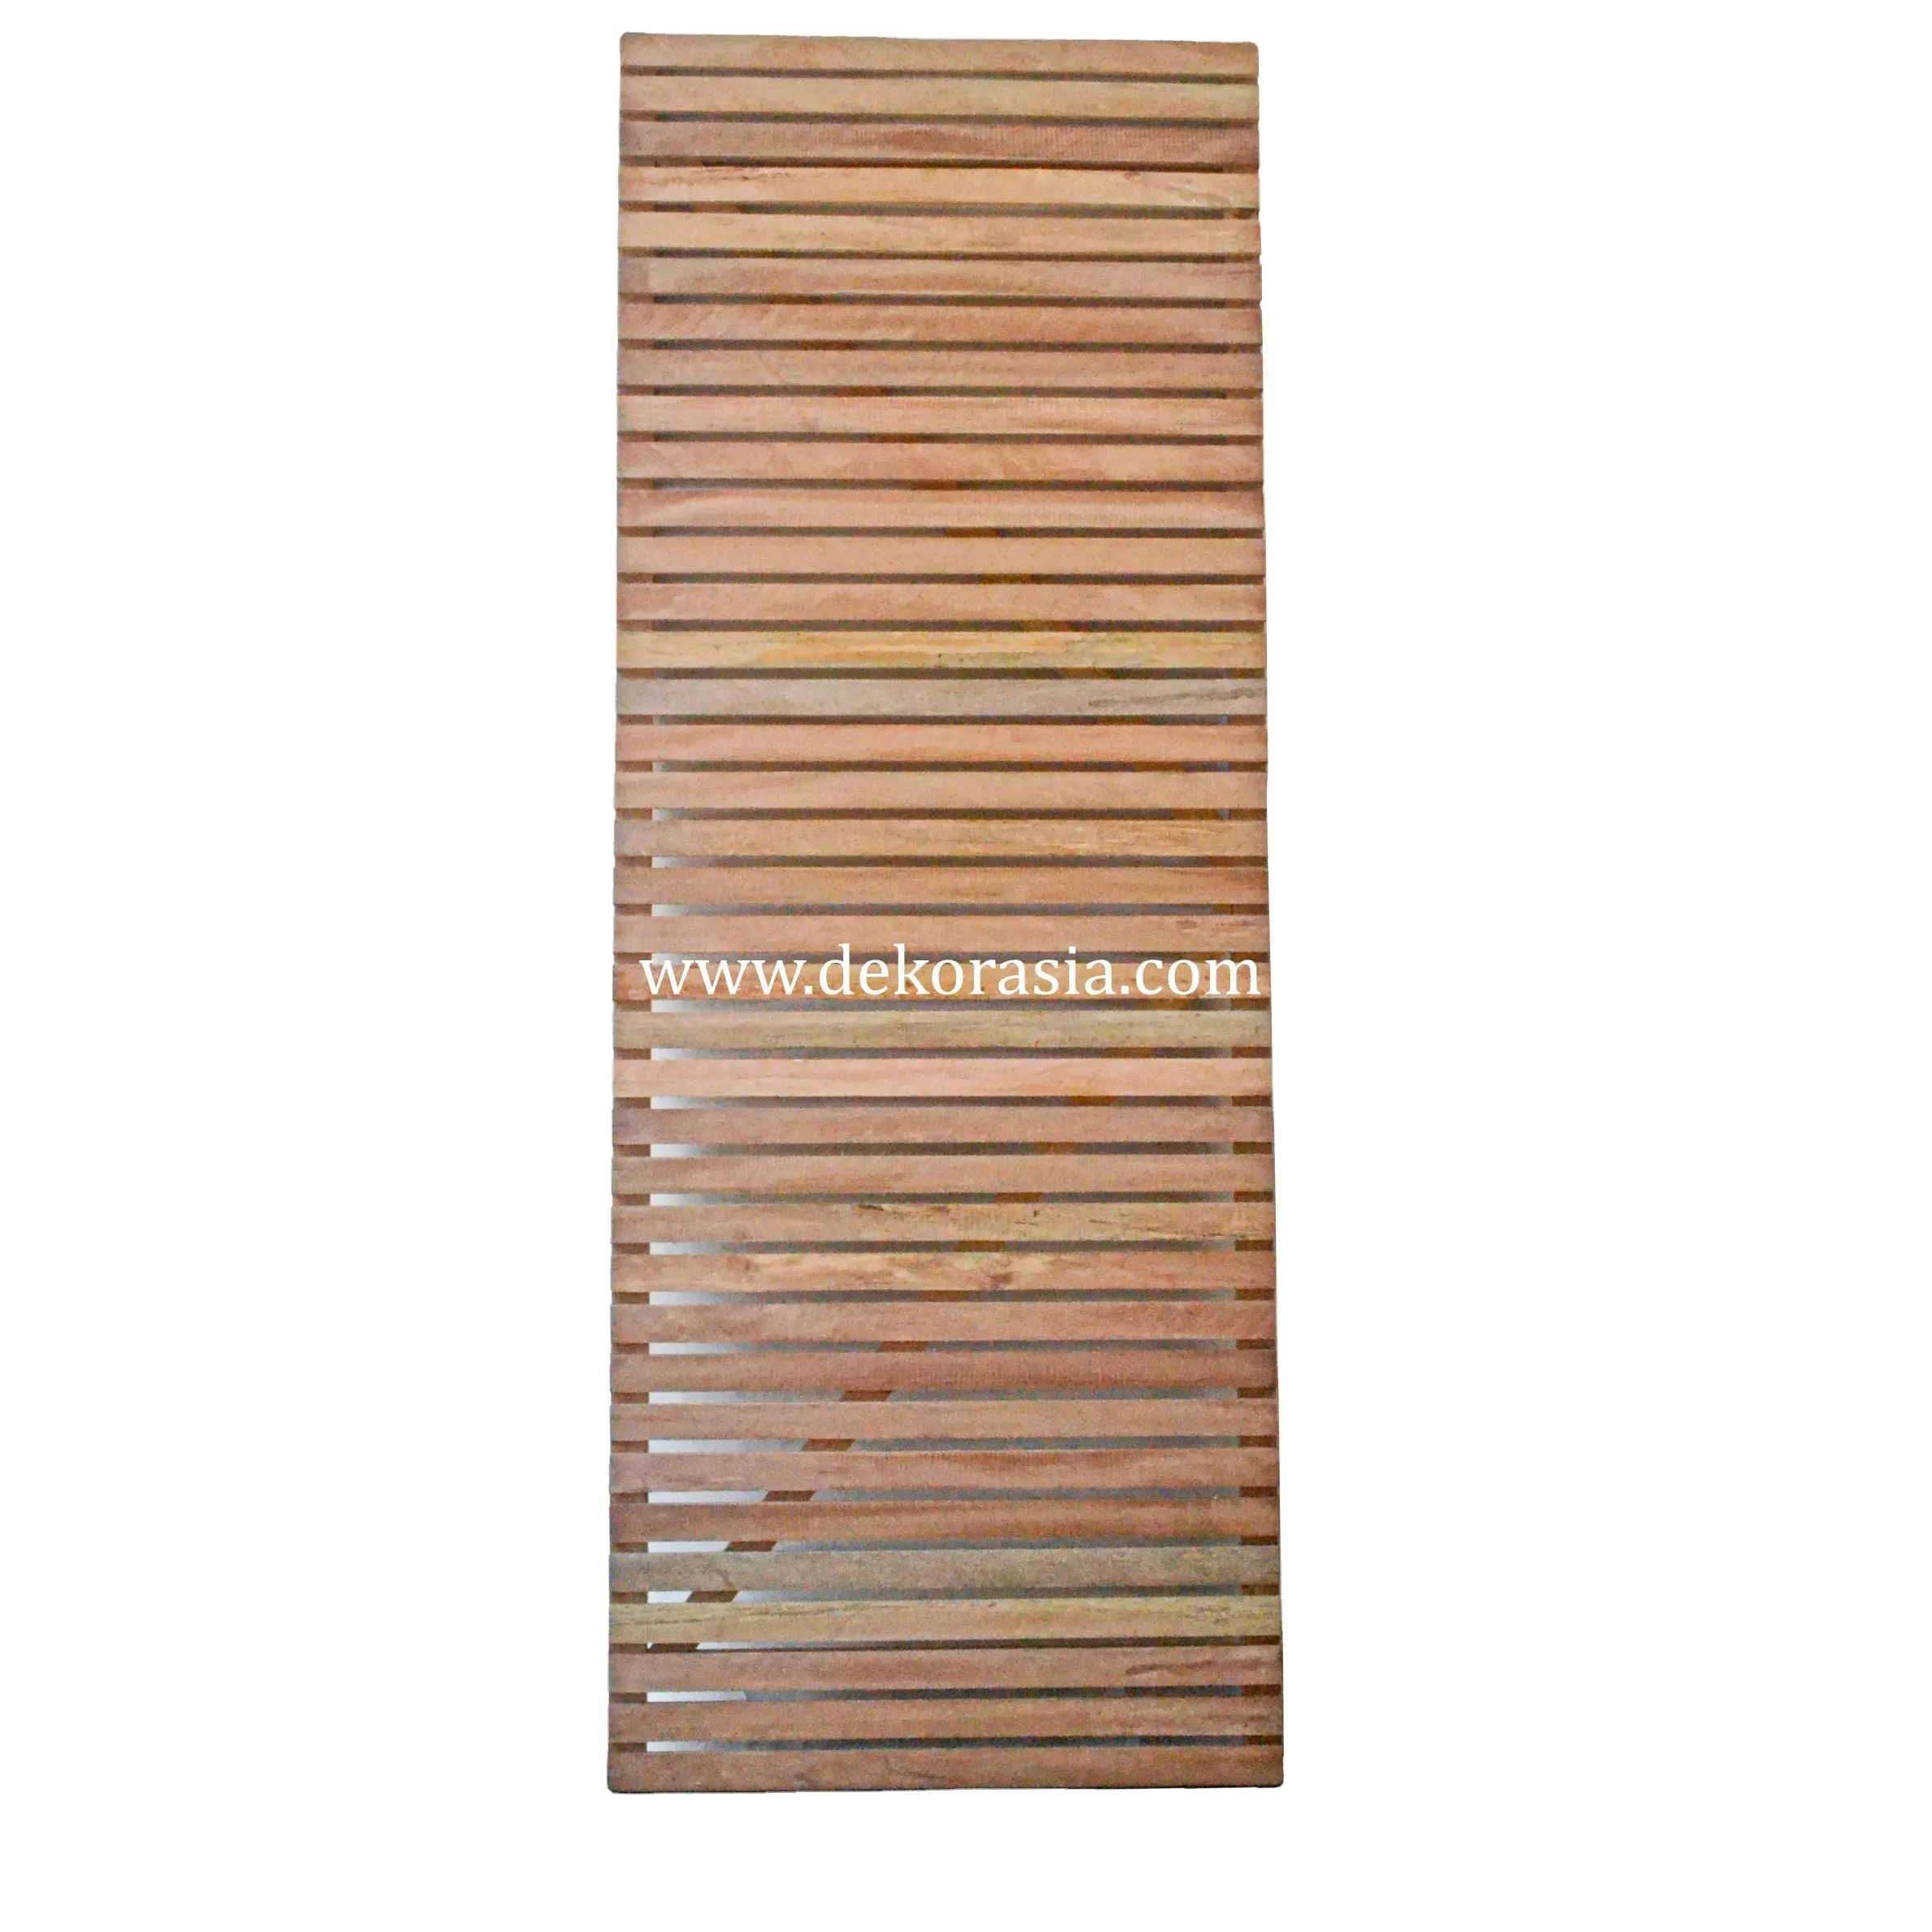 कार्यक्षेत्र/क्षैतिज Meranti लकड़ी के पैनल है। लकड़ी स्क्रीन और कमरे डिवाइडर, लकड़ी बाड़ लगाने इनडोर और आउटडोर बाड़ पैनलों